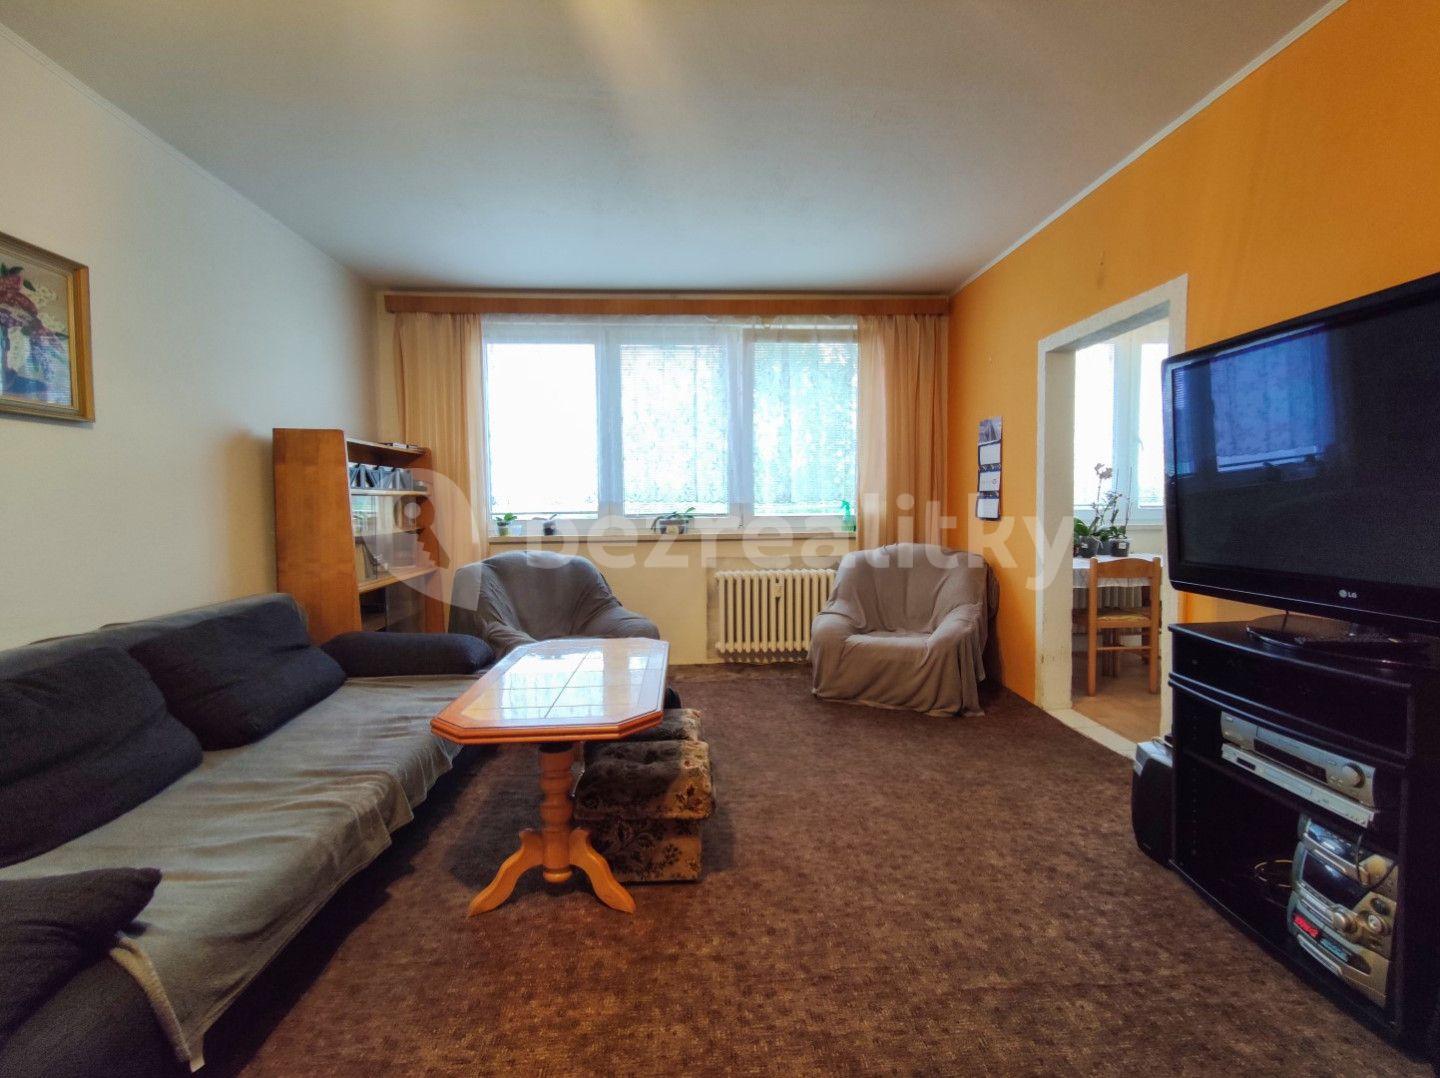 3 bedroom flat for sale, 78 m², Na Výsluní, Orlová, Moravskoslezský Region